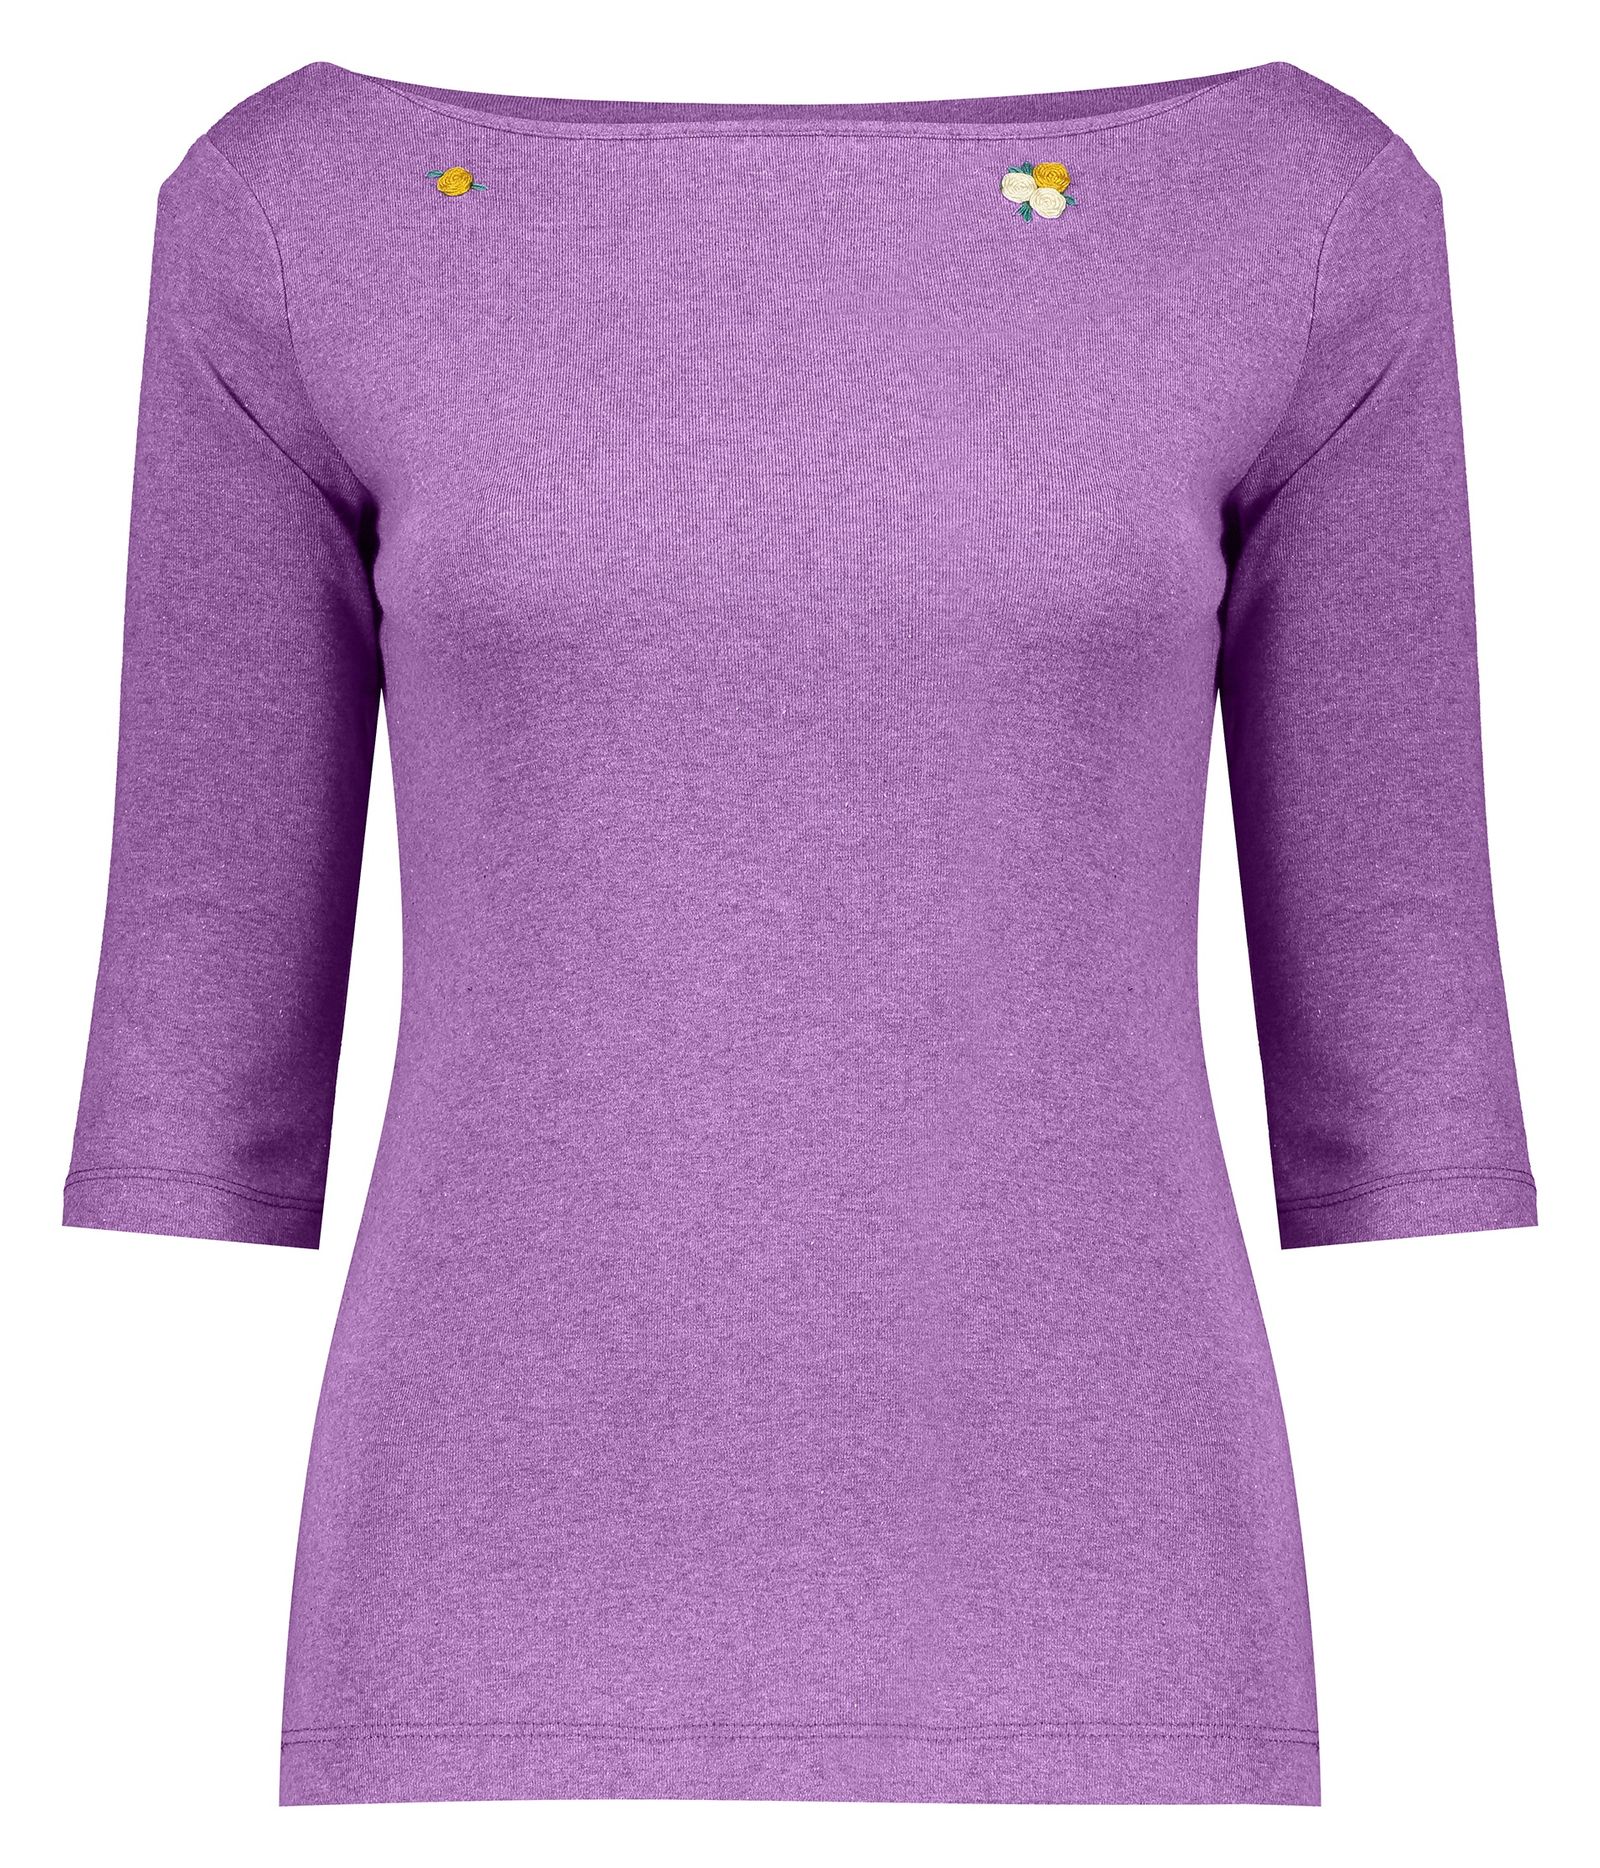 تی شرت زنانه گارودی مدل 1003113012-75 -  - 1